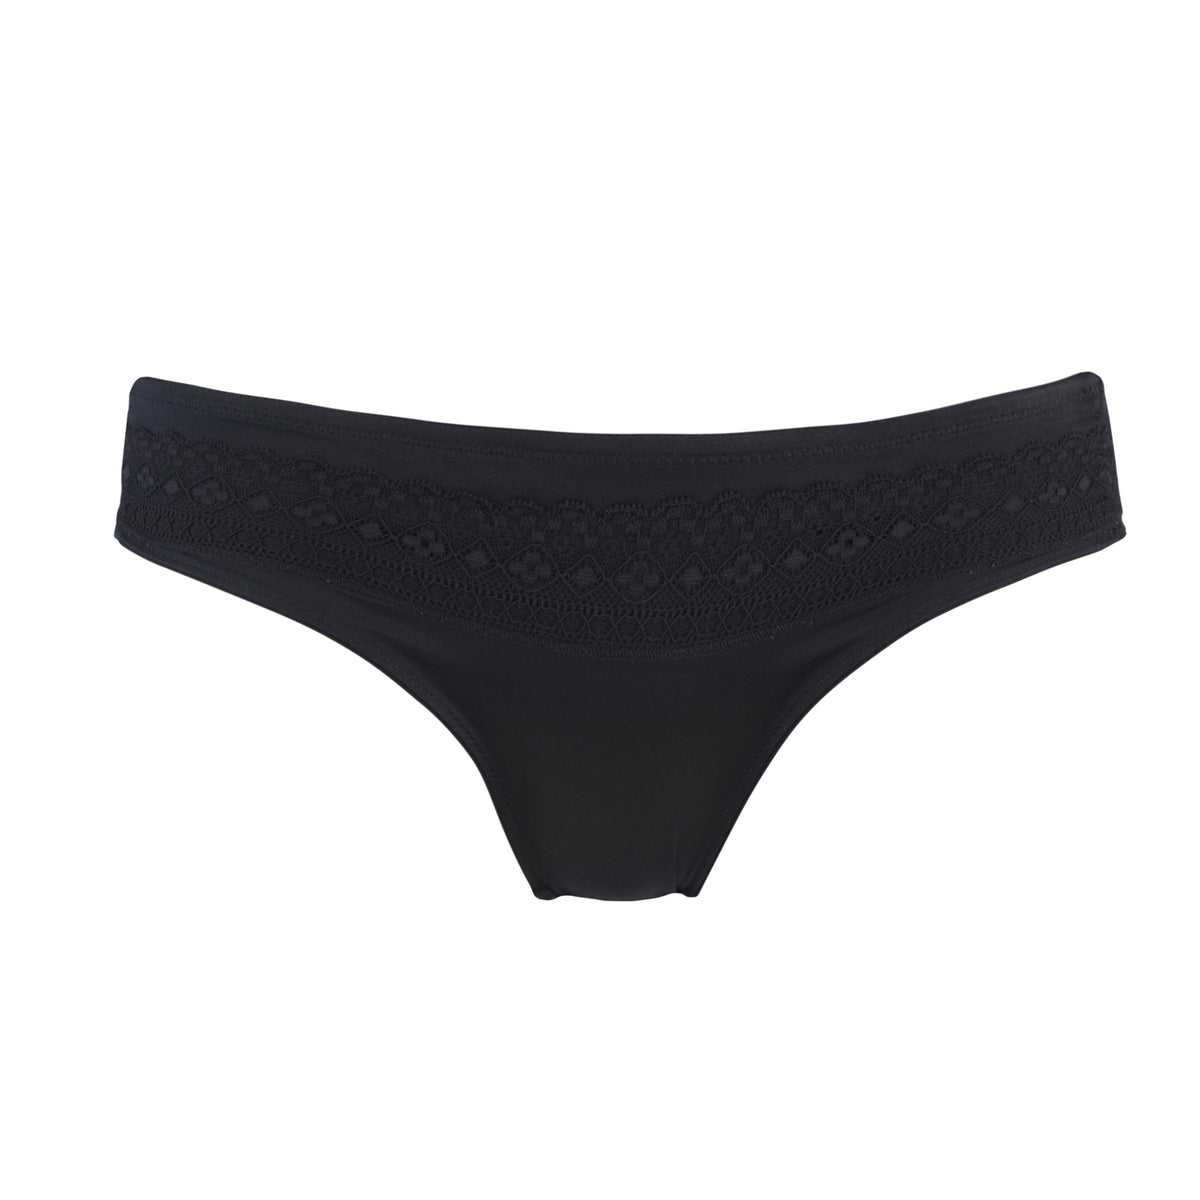 Separatec Underwear - 👉 Enjoy our Black Deals! Visit our website